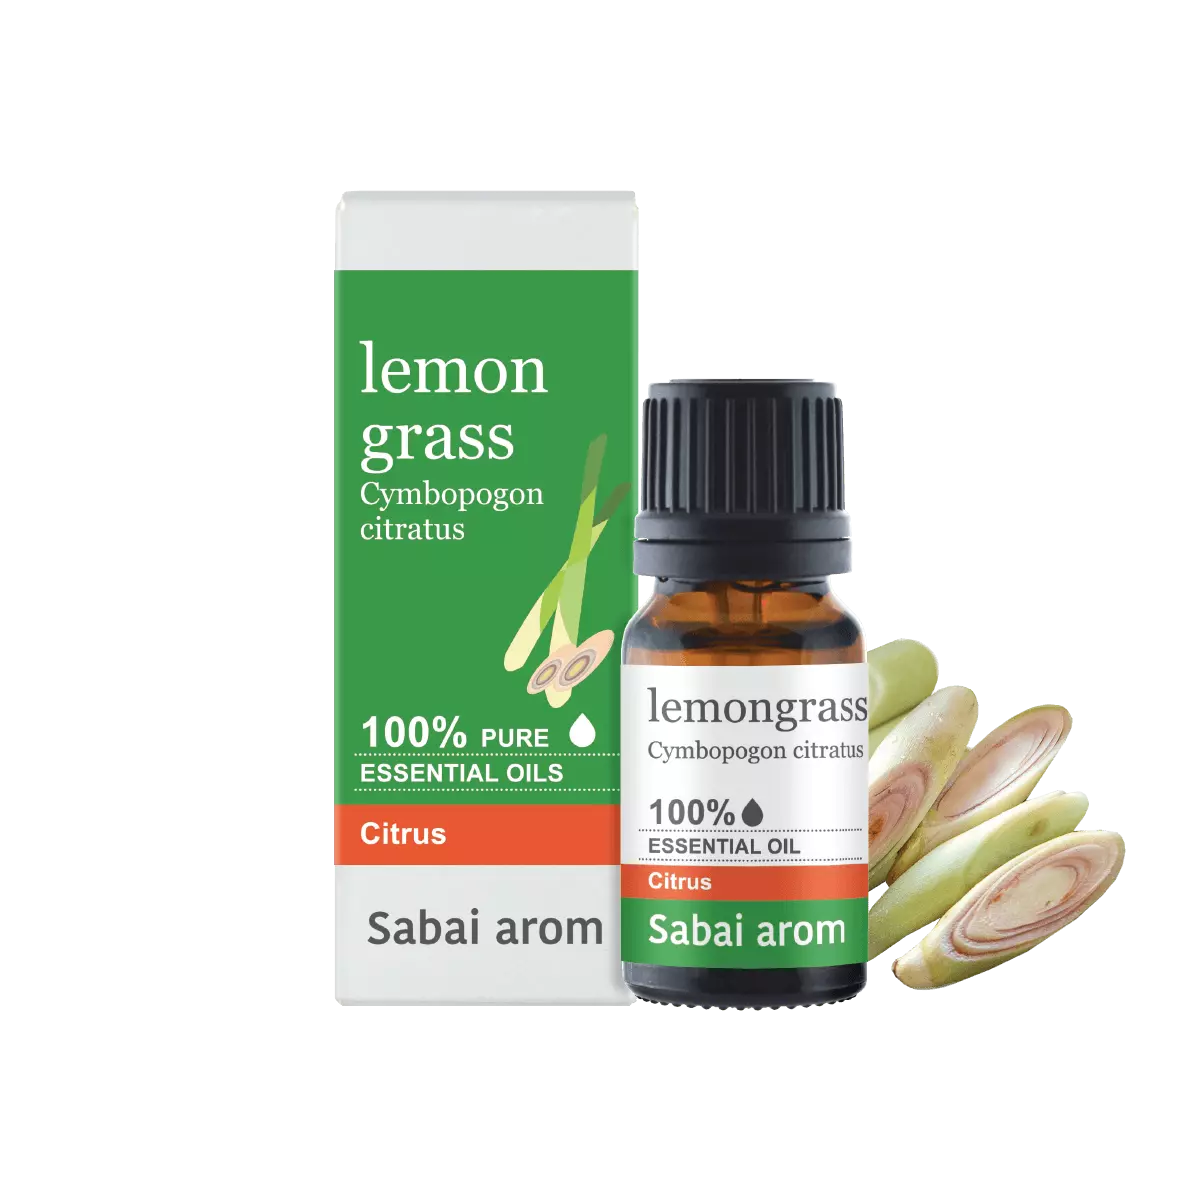 essential oil lemongrass <h5>100% Pure Essential Oil</h5> <em><strong>Cymbopogon Flexuosus</strong></em> <strong>Source : </strong>ไทย "น้ำมันหอมระเหยตะไคร้บ้าน (Lemongrass) มีคุณสมบัติพิเศษในการช่วยปัดกวาดความคิดลบๆที่รกรุงรังภายในใจให้ออกไป ช่วยให้จิตใจสะอาดปลอดโปร่งขึ้น ให้มองเห็นสิ่งดีๆในชีวิต ให้พ้นจากกับดักความคิดตัวเองที่เป็นอุปสรรคความก้าวหน้าให้พัฒนาไปข้างหน้าได้ และยังช่วยปรับสมดุลระหว่างเหตุผลและความปรารถนาของหัวใจอีกด้วย ในด้านการบำบัดร่างกาย น้ำมันตะไคร้มีคุณสมบัติในการรักษาอาการเมื่อยล้ากล้ามเนื้อและข้อ มีสรรพคุณช่วยปรับสภาพและกระชับผิวสำหรับผู้ที่มีผิวมัน และยังใช้นวดบริเวณท้องเพื่อช่วยกระตุ้นการย่อยอาหาร <strong>Scent : </strong>Strong herbal lemony scent with herbal oily dryout. <strong>Family : </strong>กลิ่นพืชตระกูลส้ม <strong>Note : </strong>Top to Middle